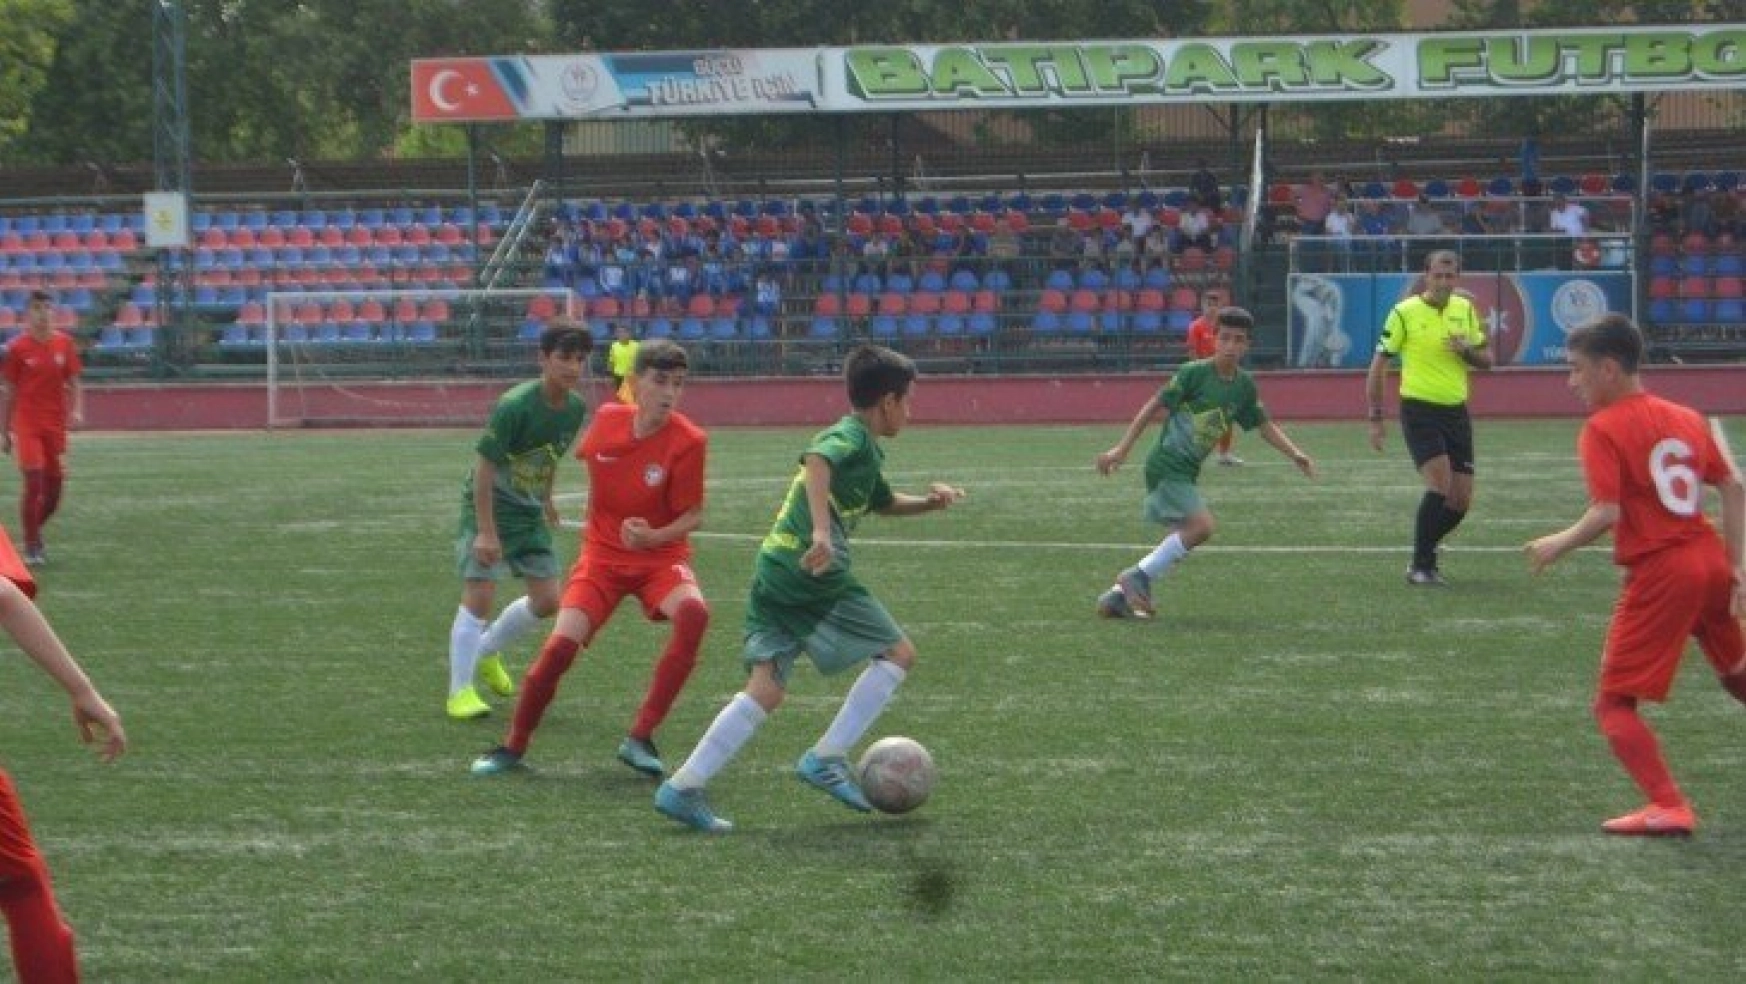 U14 Türkiye Futbol Şampiyonası başladı